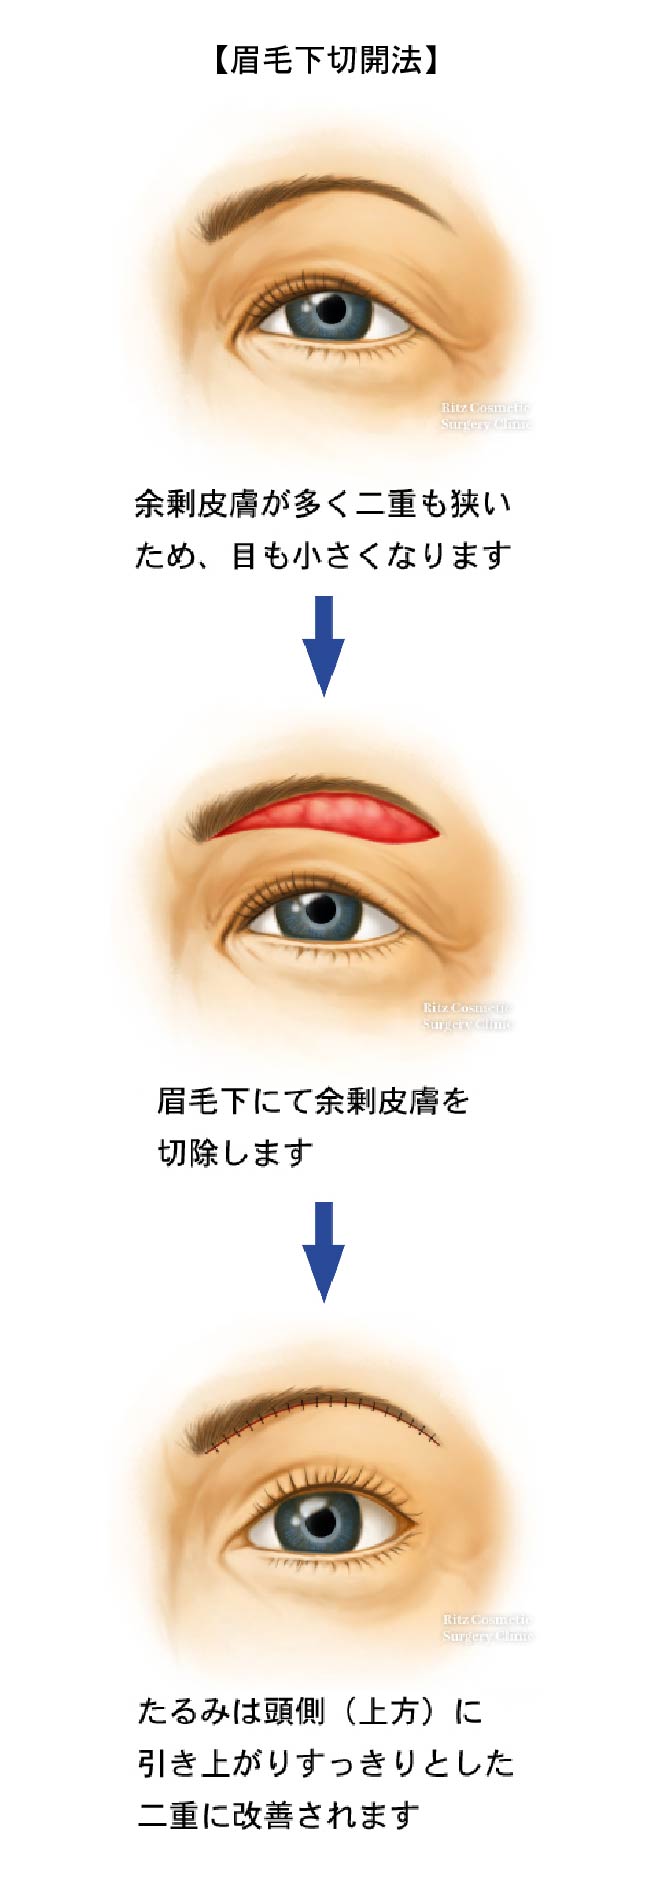 眉毛下切開法の３つの手順